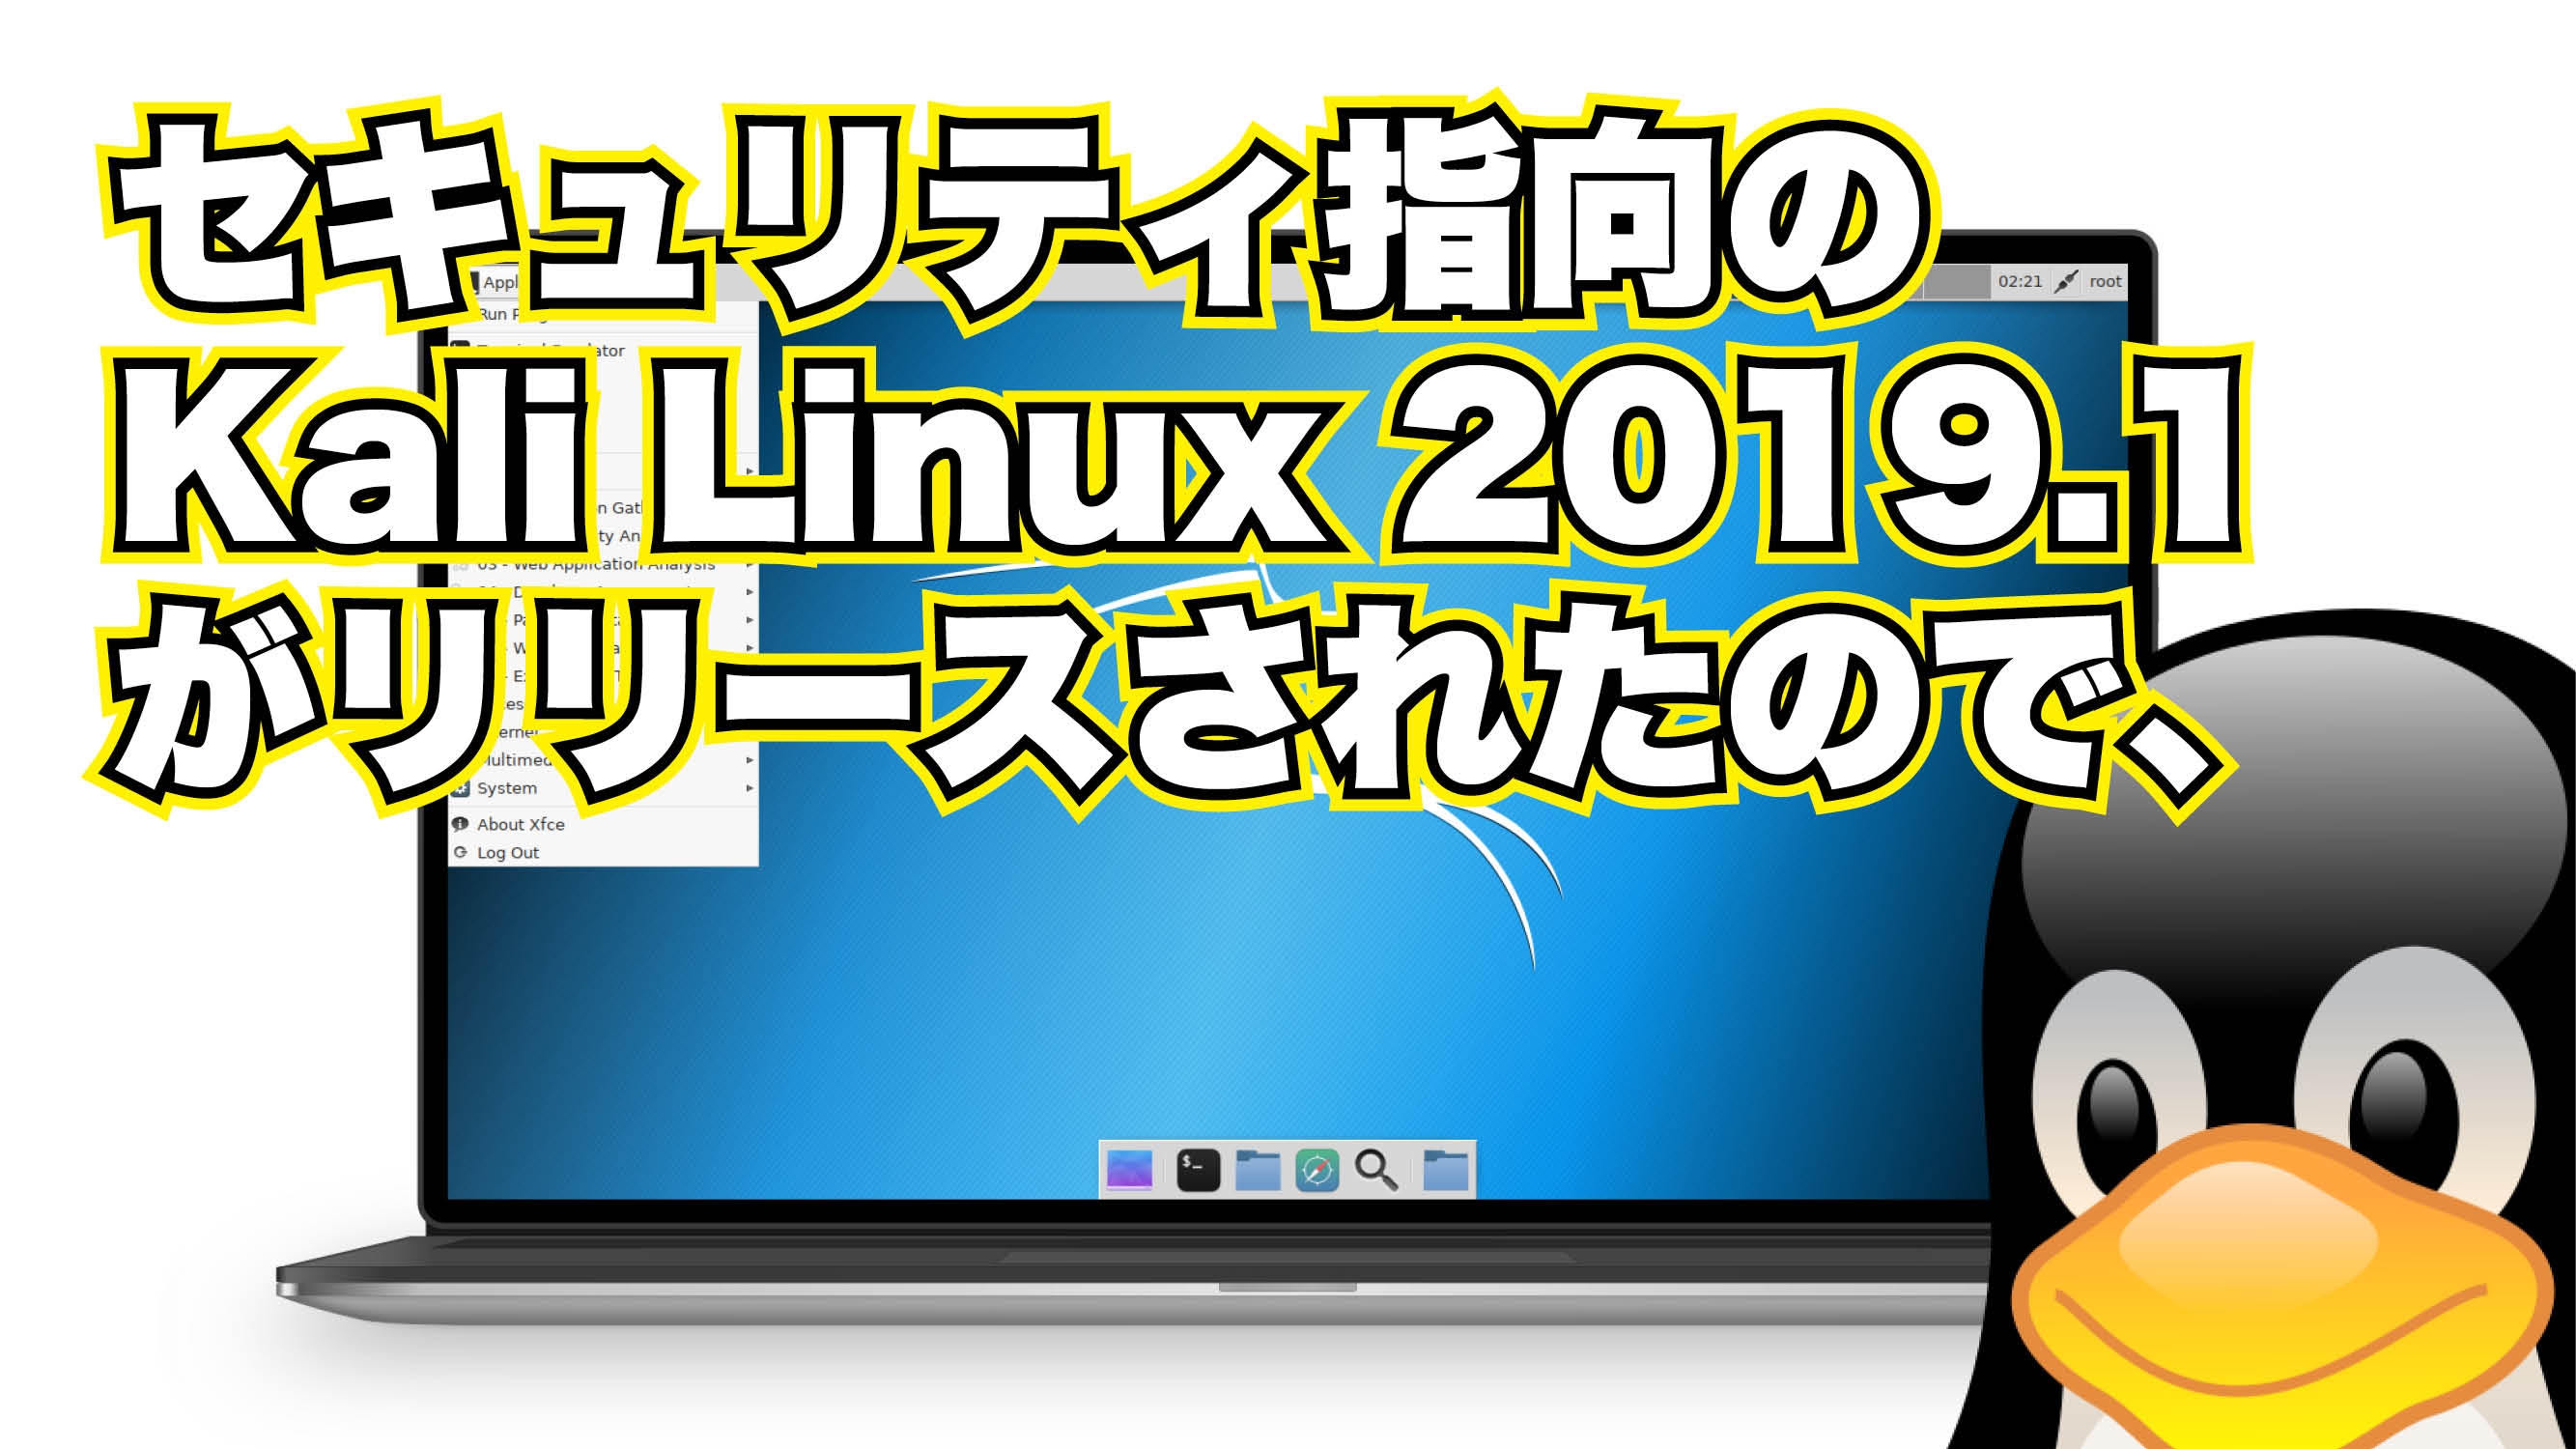 セキュリティ指向の Kali Linux 2019.1 がリリースされたので、